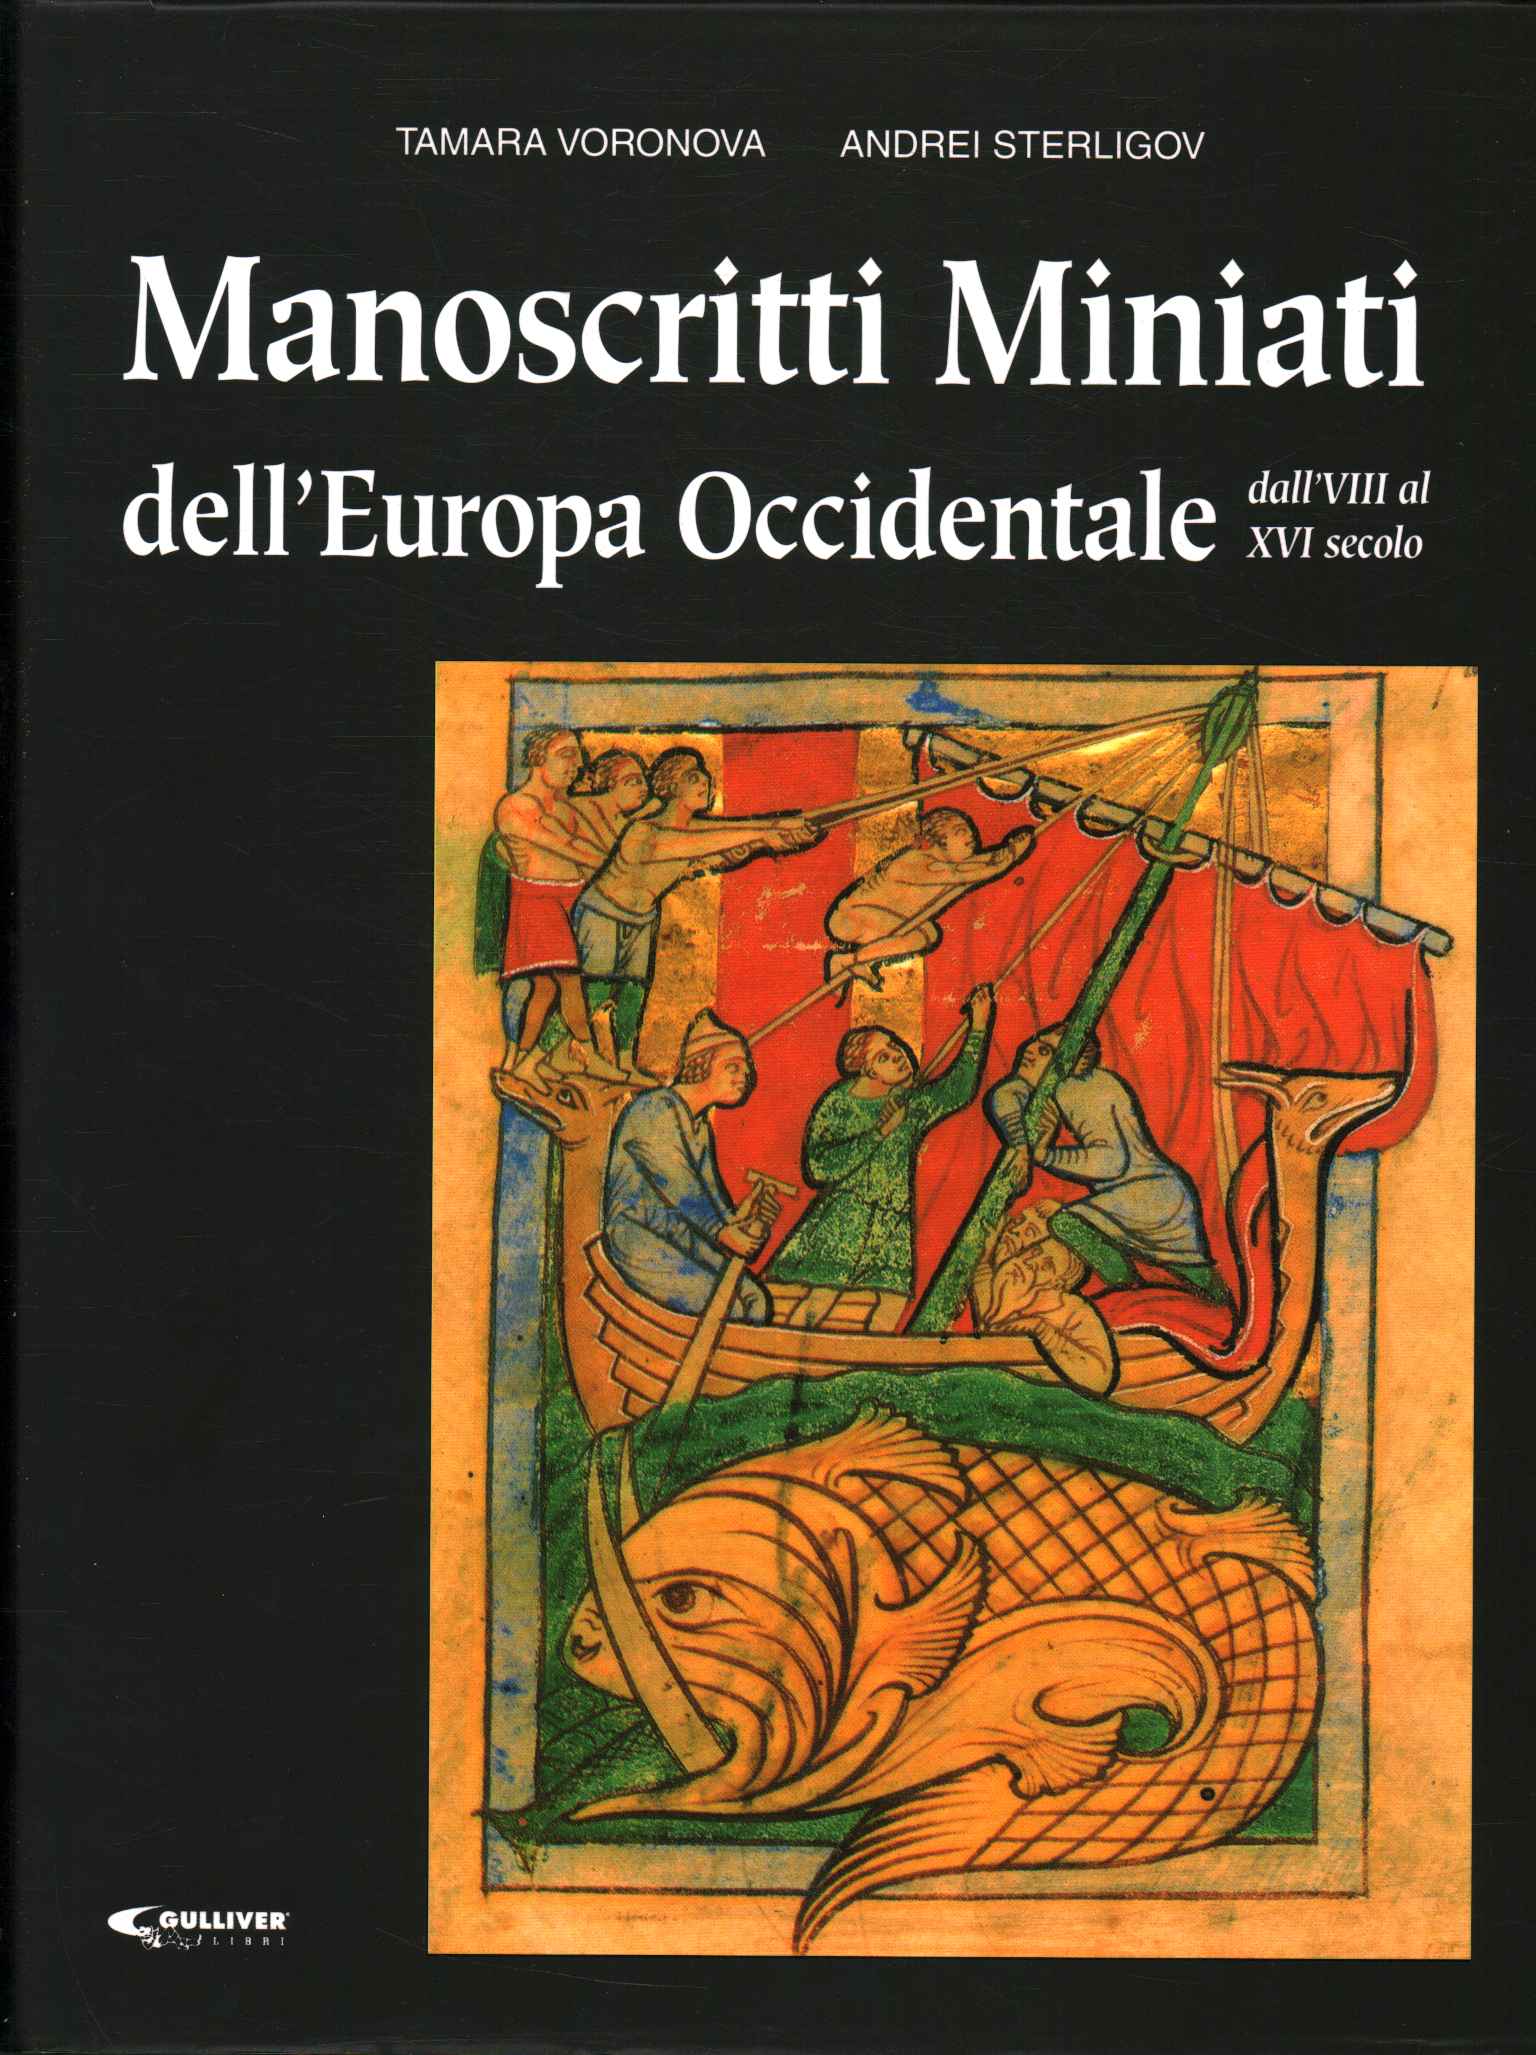 Illuminated manuscripts of Europe O